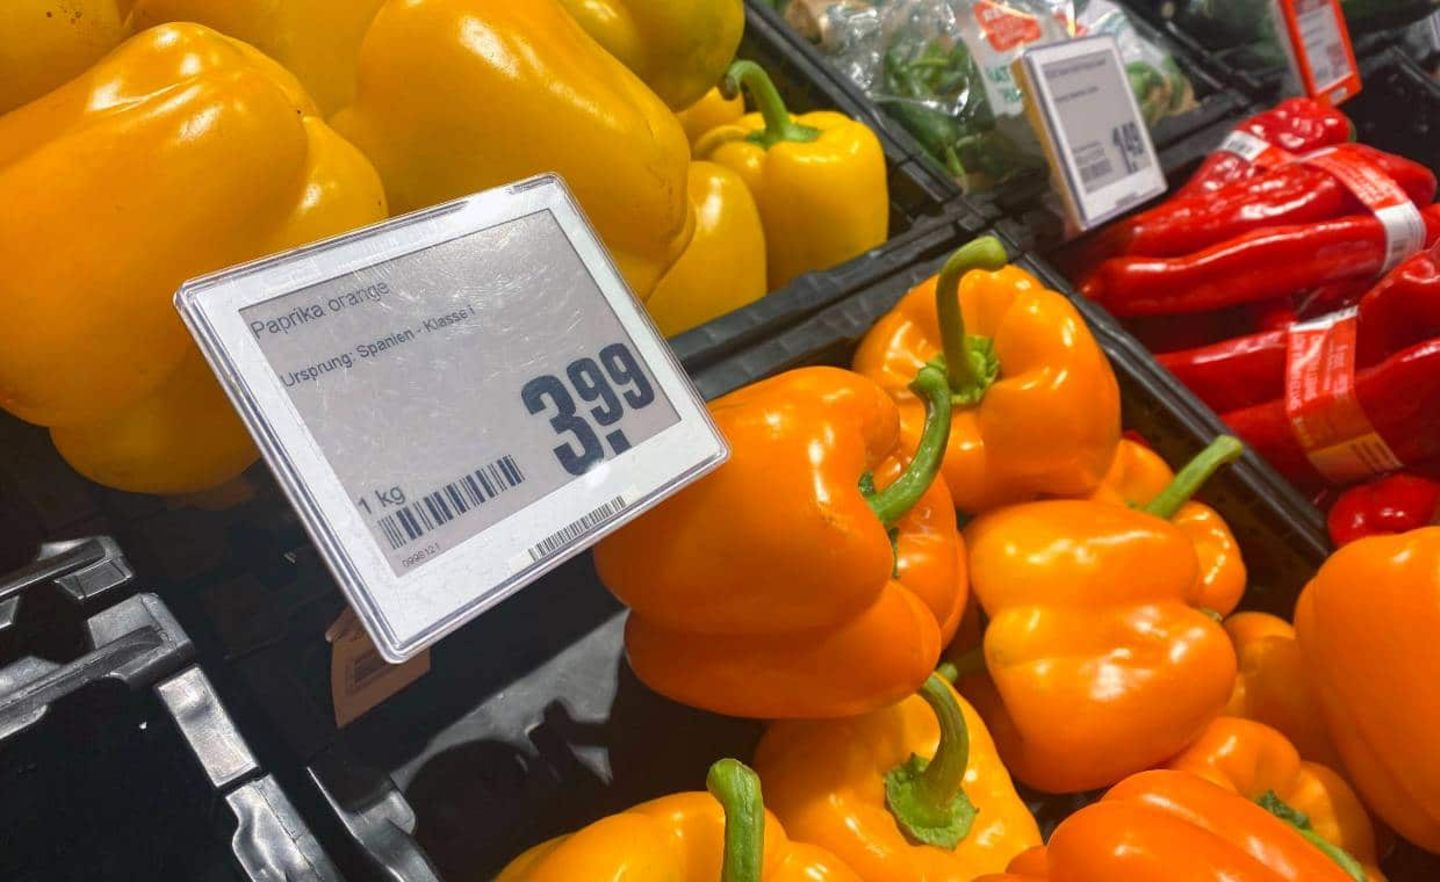 Gemüse im Supermarkt ist auffallend teurer geworden